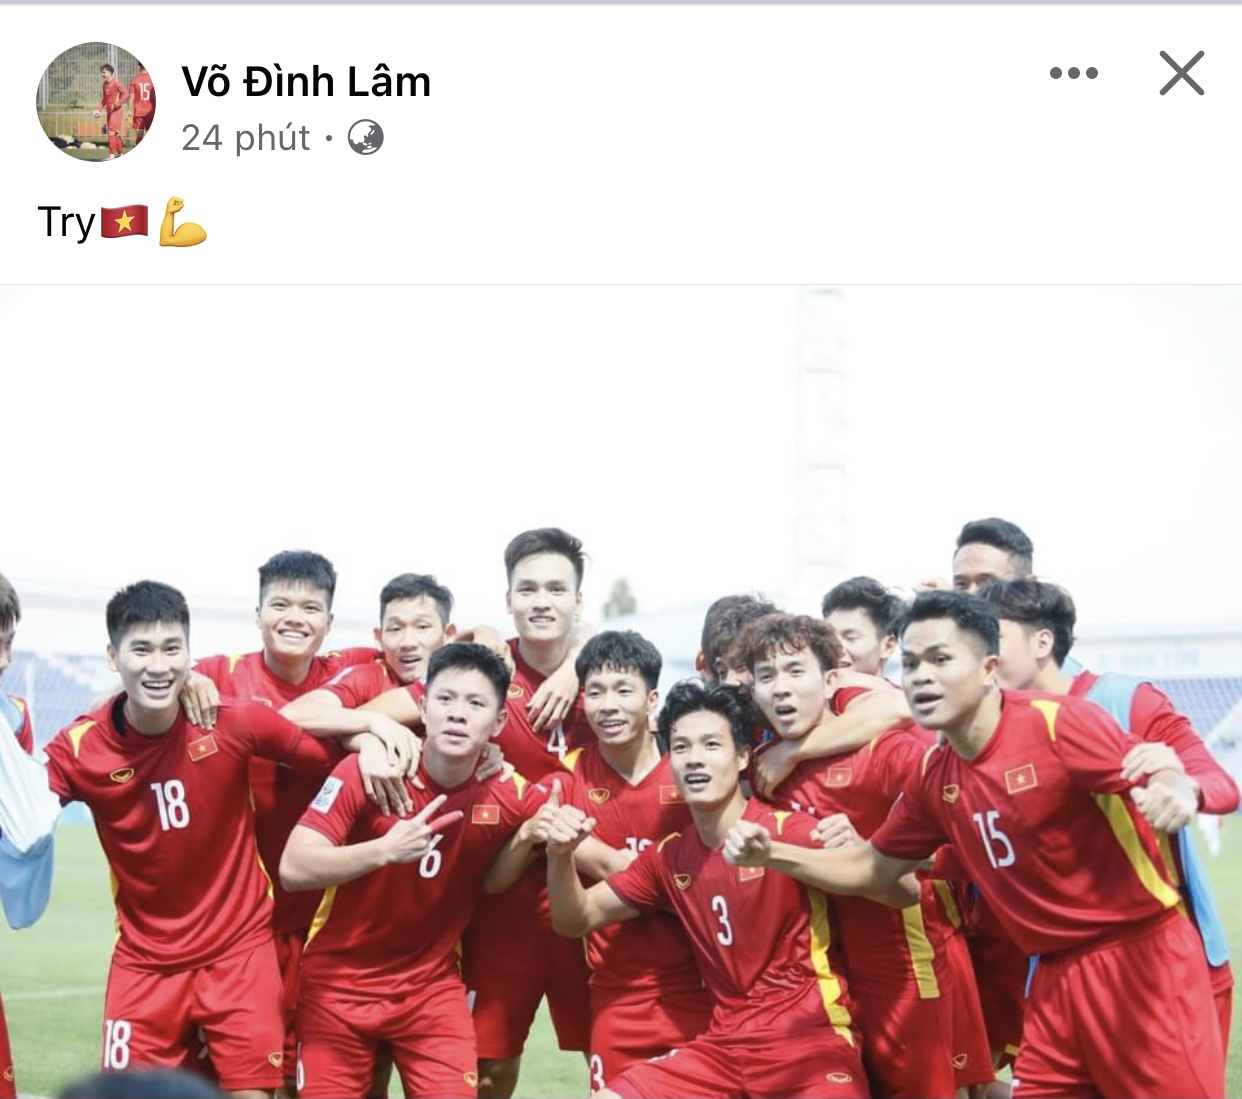 Hoà Hàn Quốc các cầu thủ U23 Việt Nam ăn mừng tưng bừng - Ảnh 6.